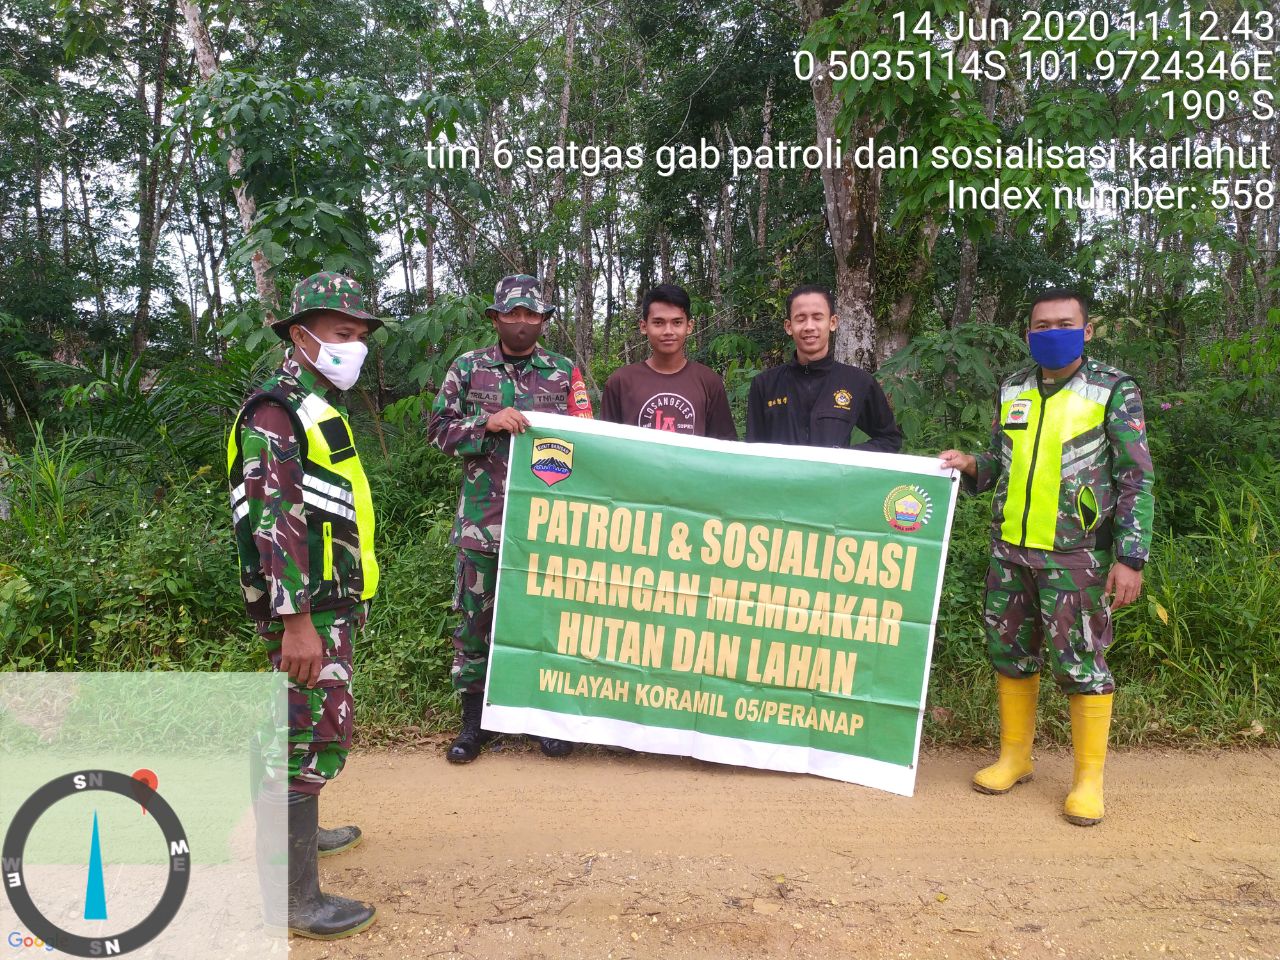 Monitor Daerah Rawan Karhutla Dantim 06 Himbau Warga Berperan Cegah Karhutla